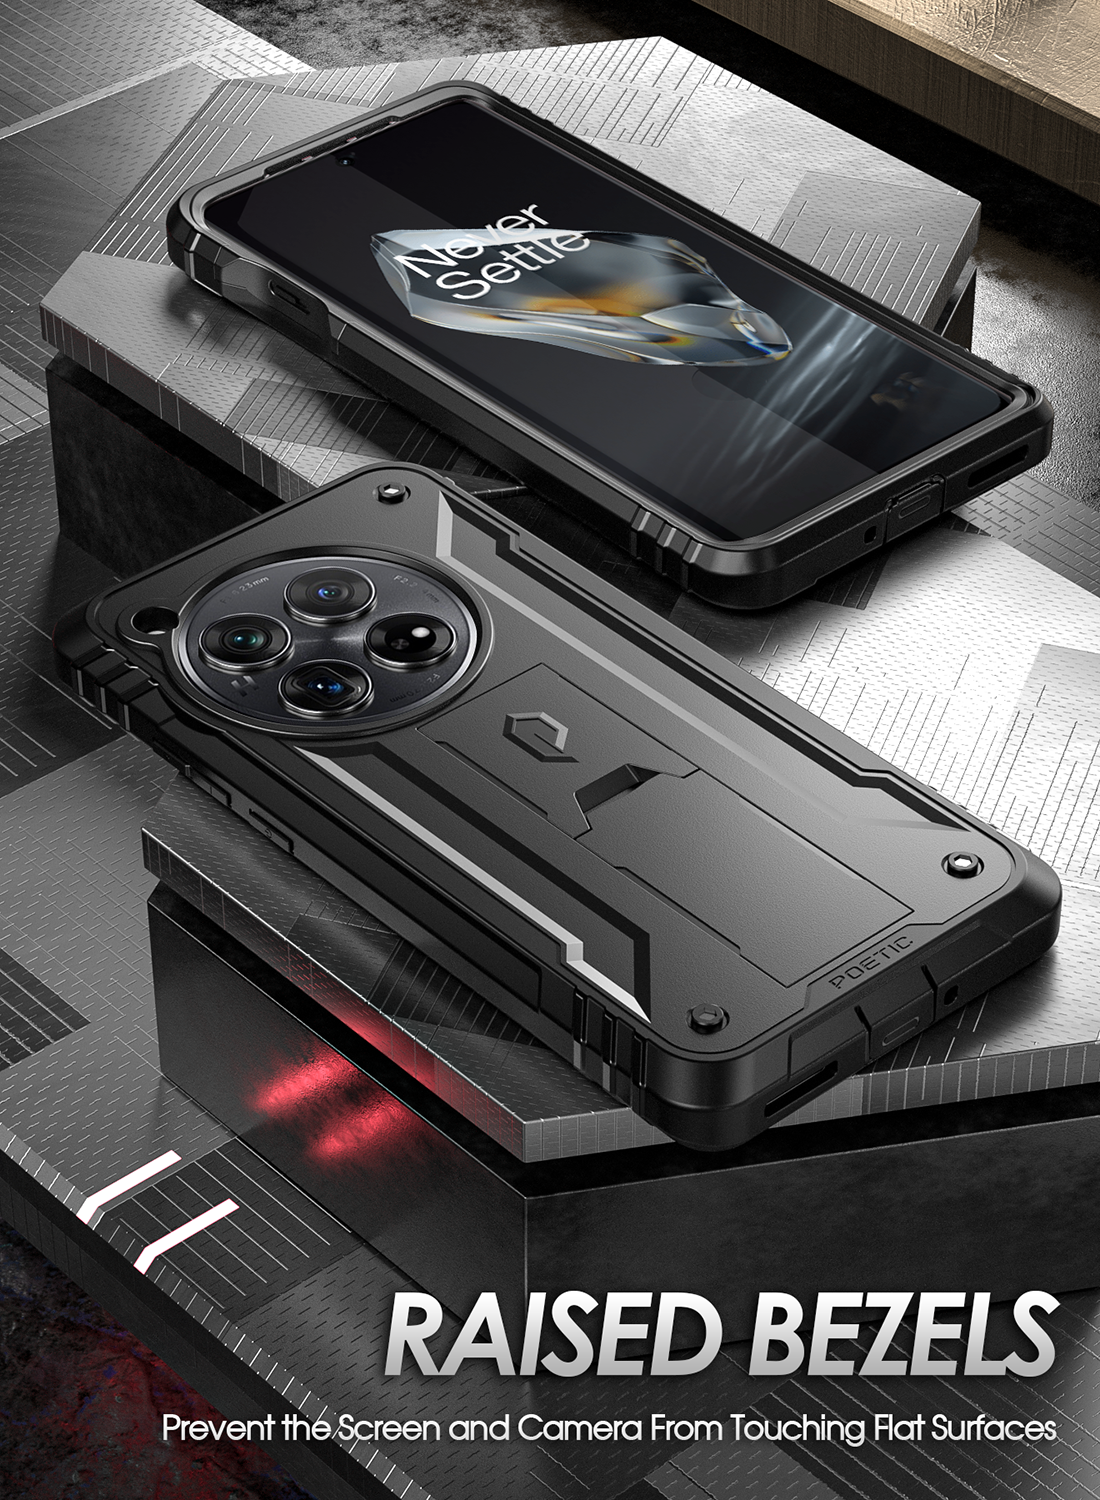 OnePlus 12 5G Case